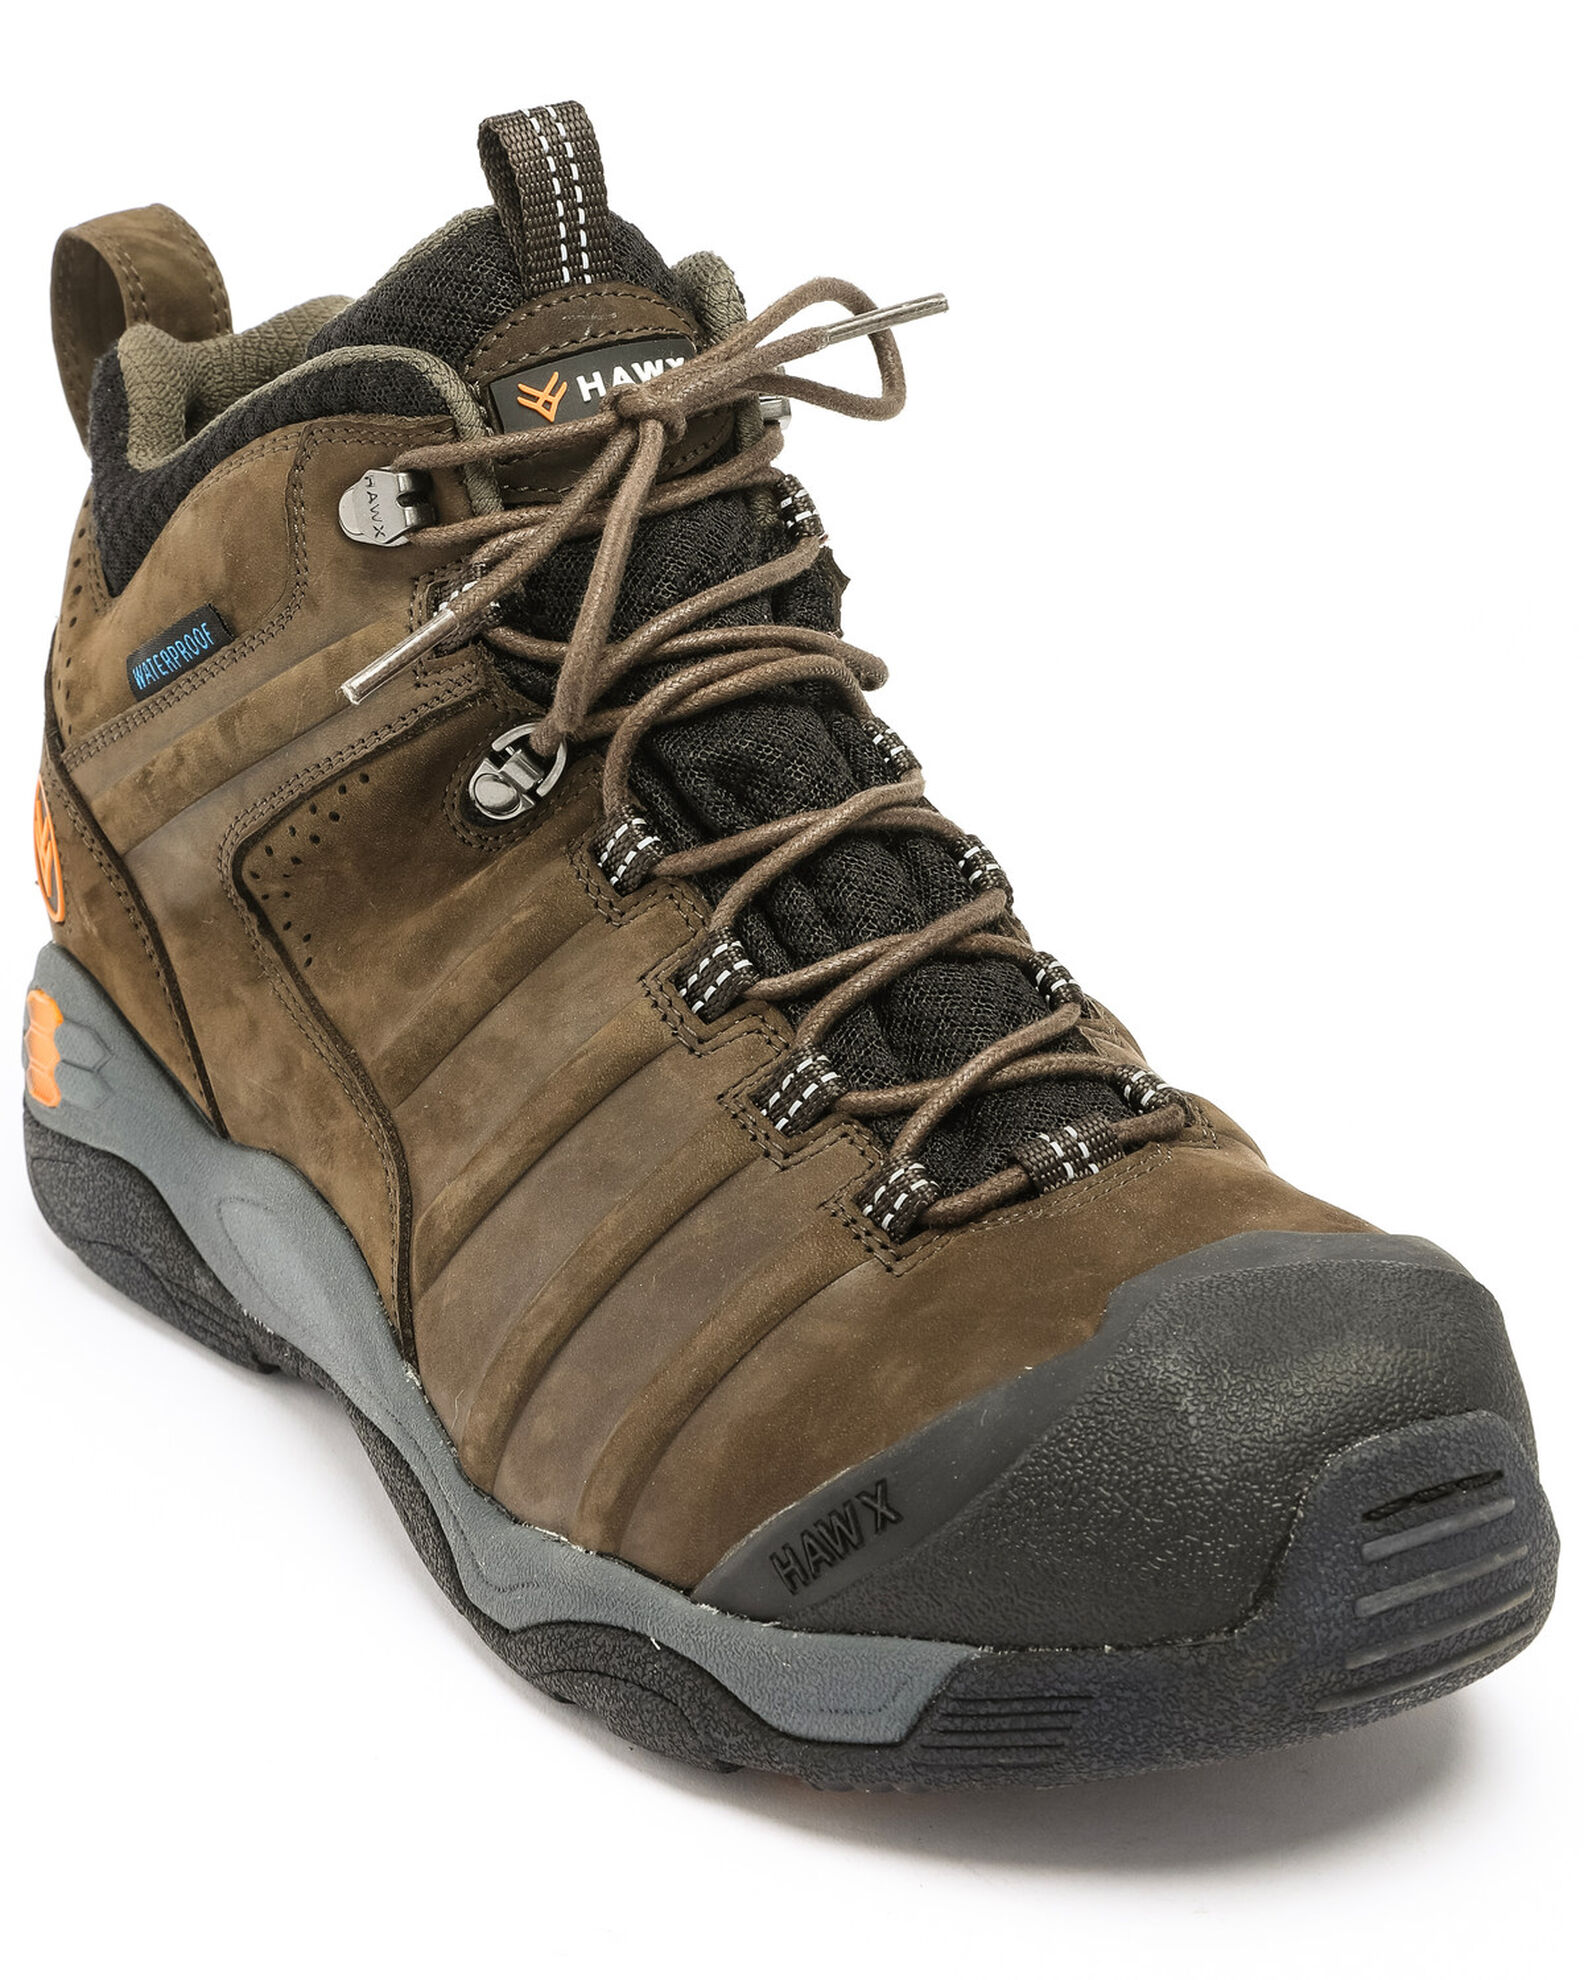 Hawx Men's Axis Waterproof Hiker Boots - Round Toe